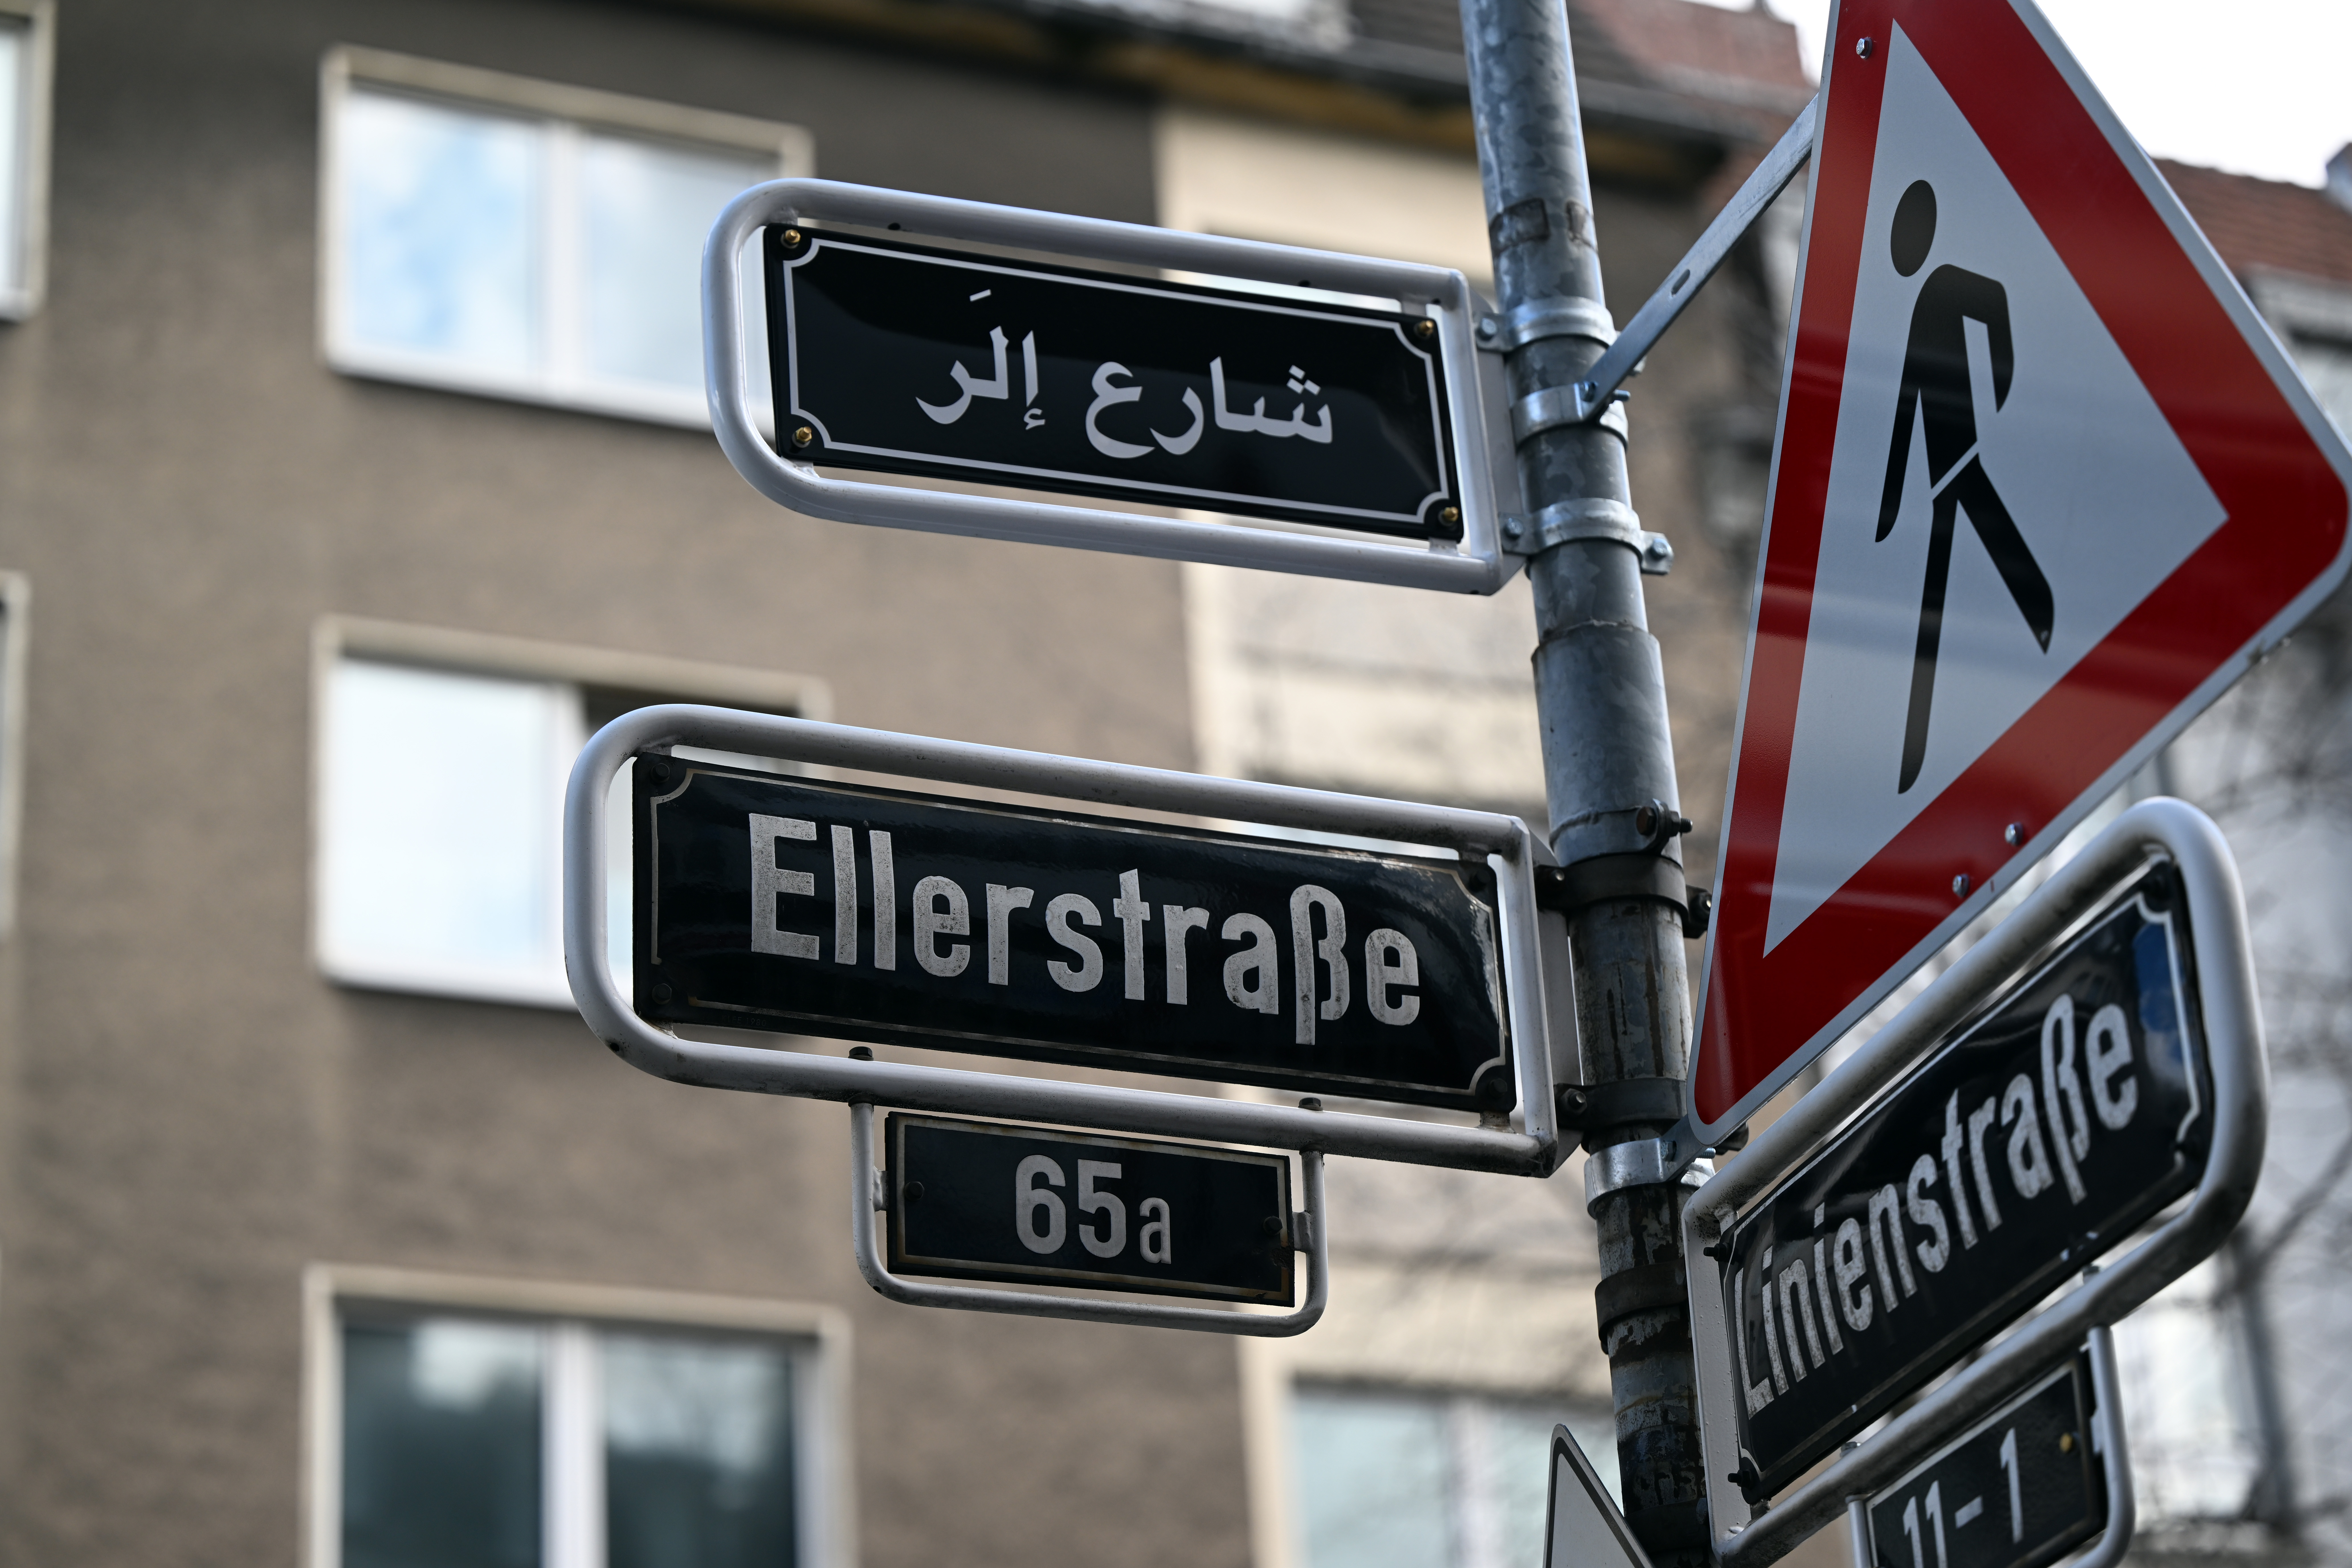 Düsseldorf: Angriff auf arabisches Straßenschild! Schlimme Botschaft 